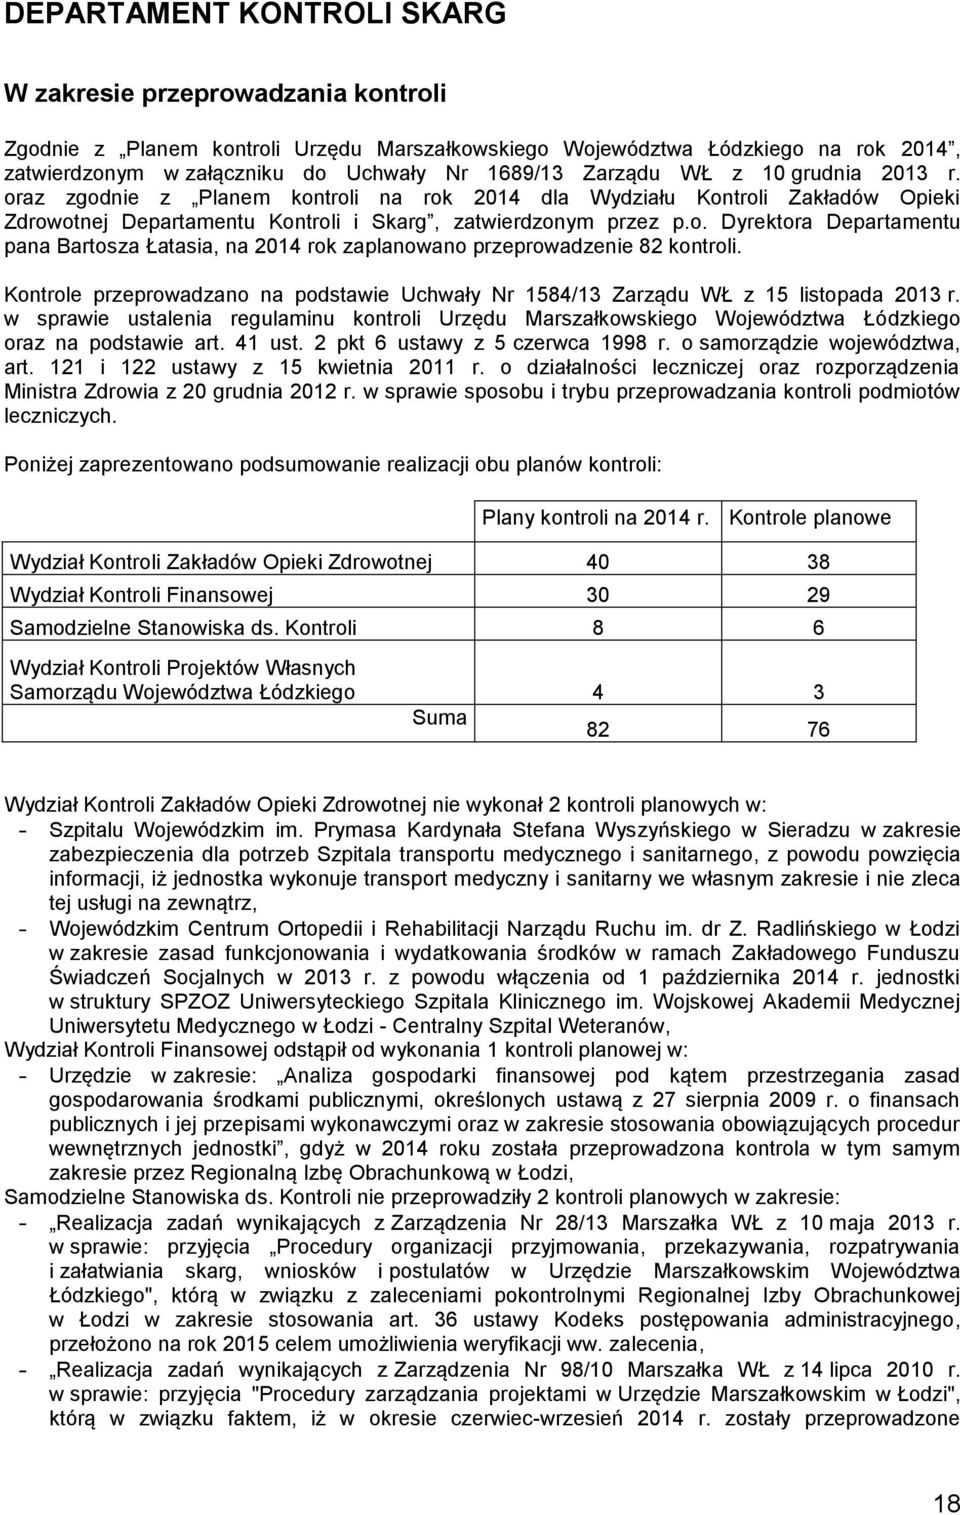 Kontrole przeprowadzano na podstawie Uchwały Nr 1584/13 Zarządu WŁ z 15 listopada 2013 r. w sprawie ustalenia regulaminu kontroli Urzędu Marszałkowskiego Województwa Łódzkiego oraz na podstawie art.